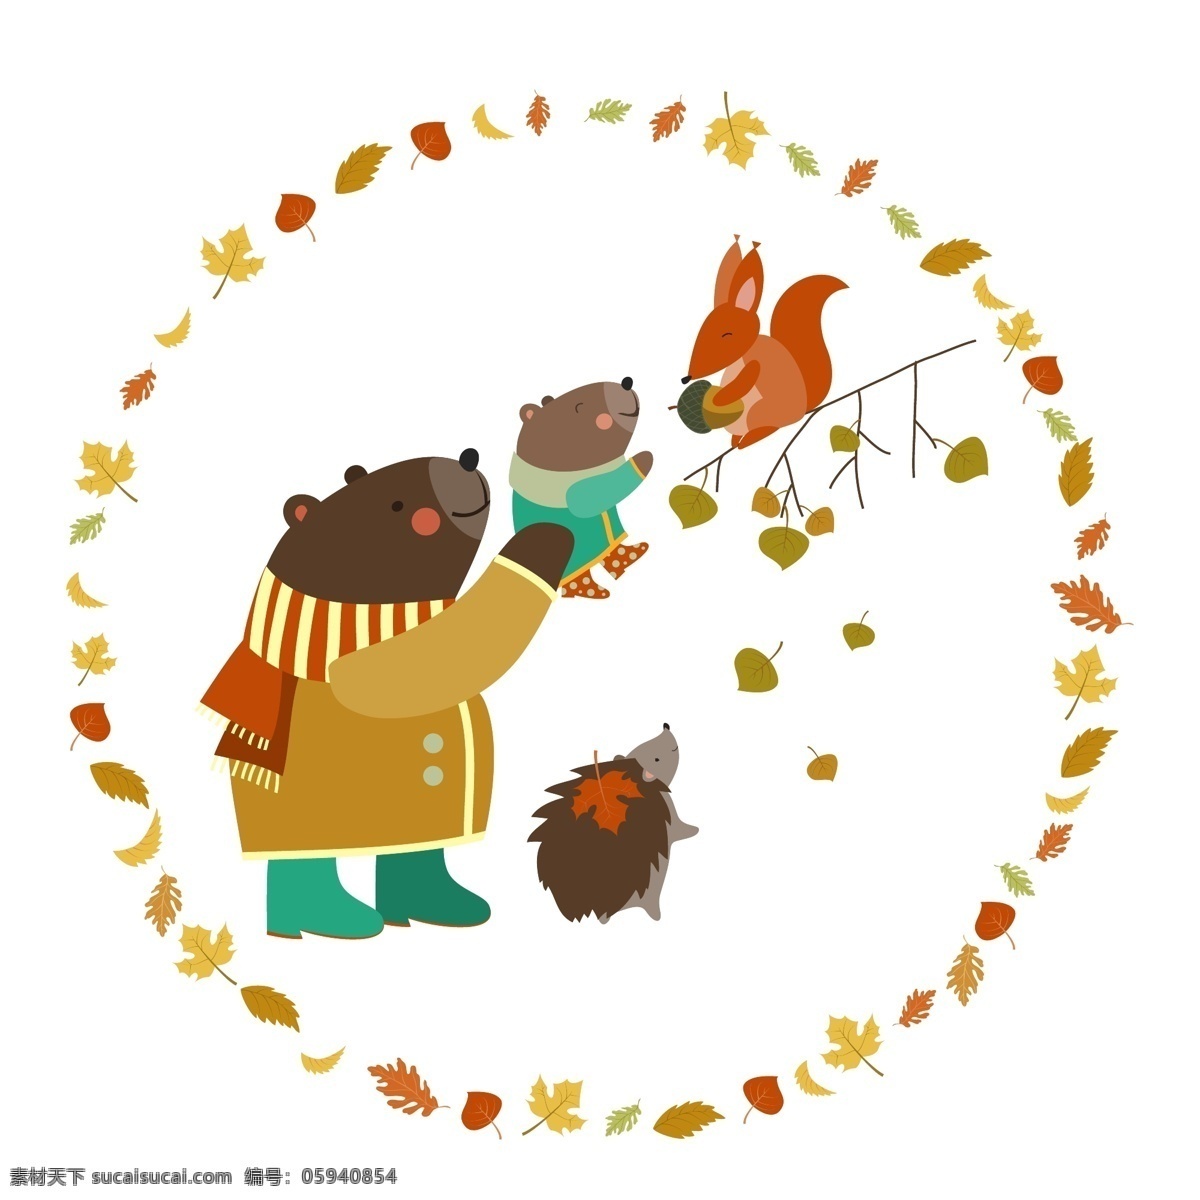 熊 松鼠 刺猬 走路 动物 动物素材 卡通动物 矢量动物